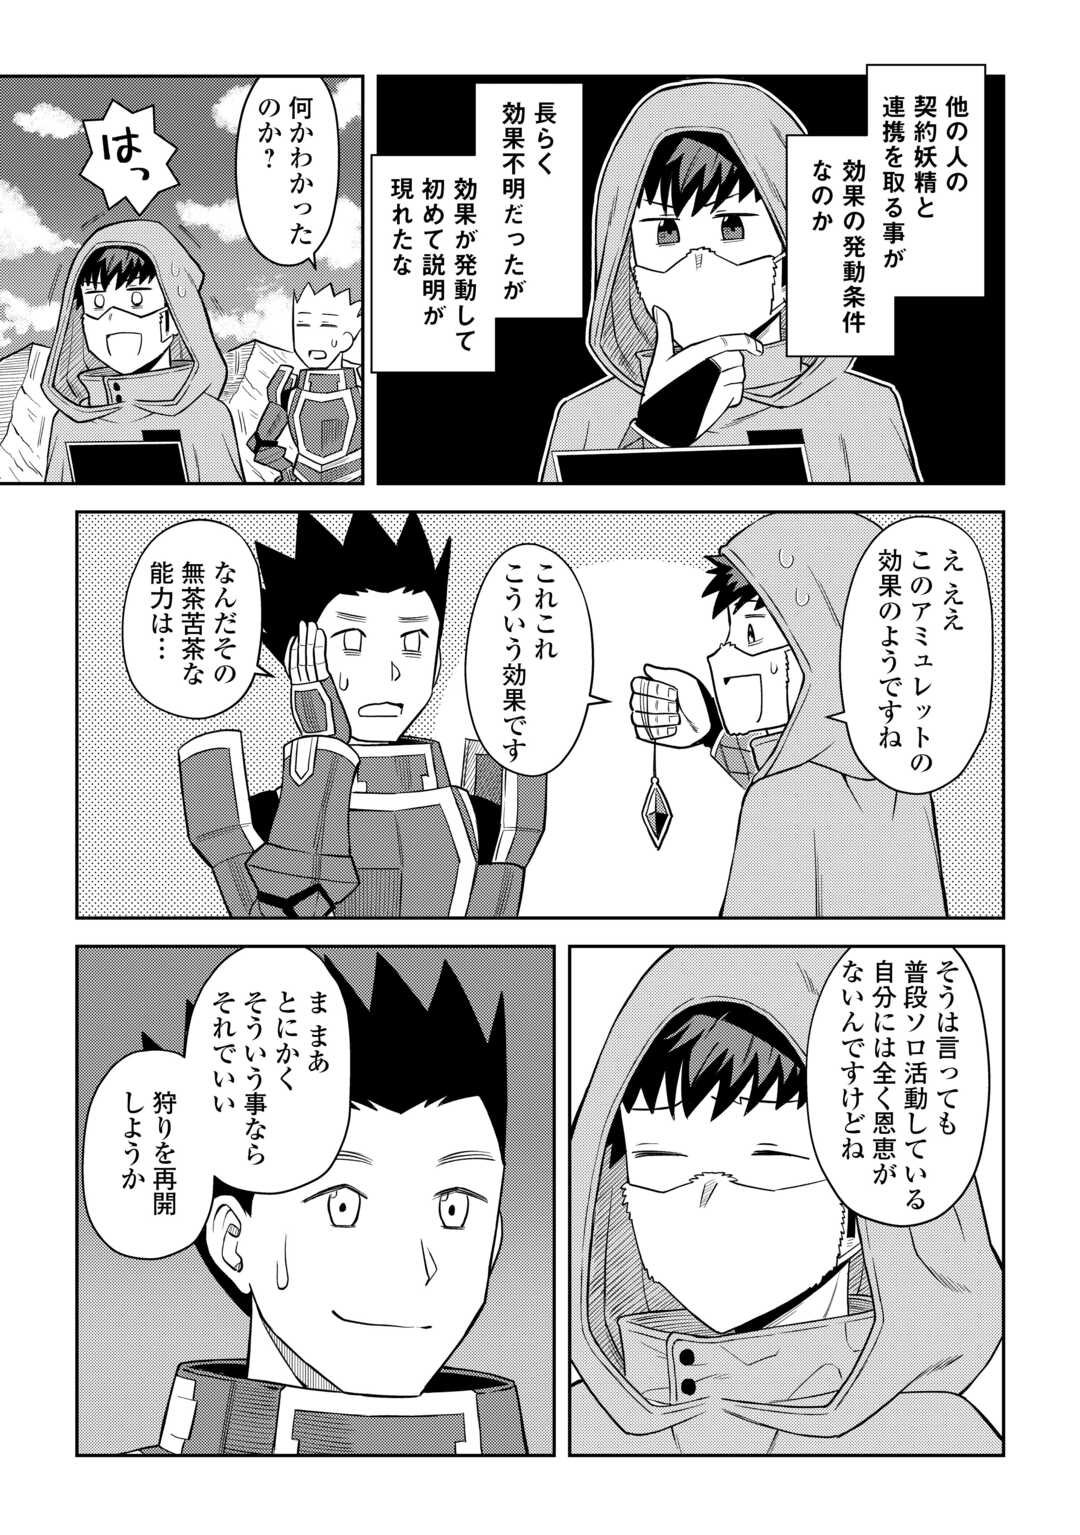 Toaru Ossan no VRMMO Katsudouki - Chapter 98 - Page 3